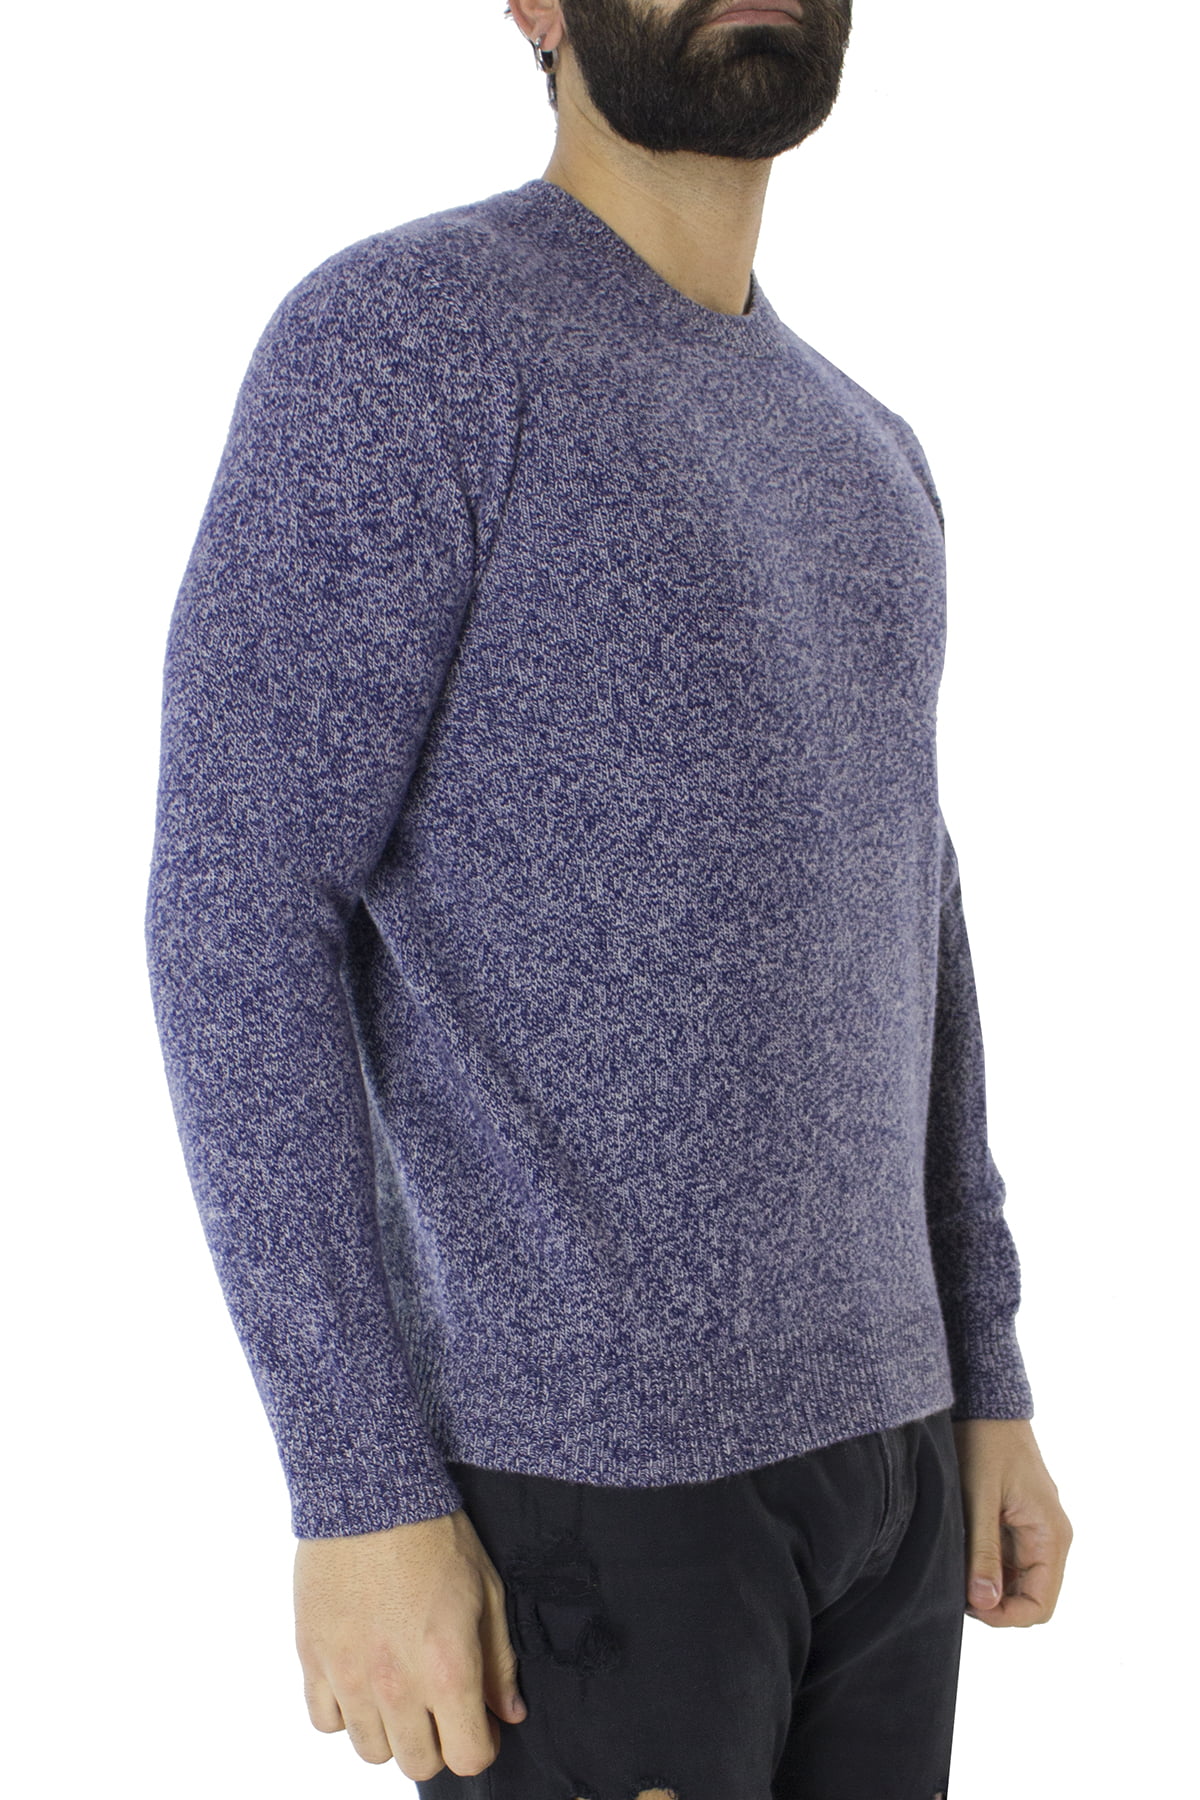 Maglione uomo Girocollo blu effetto melange bianco in lana 100% slim fit